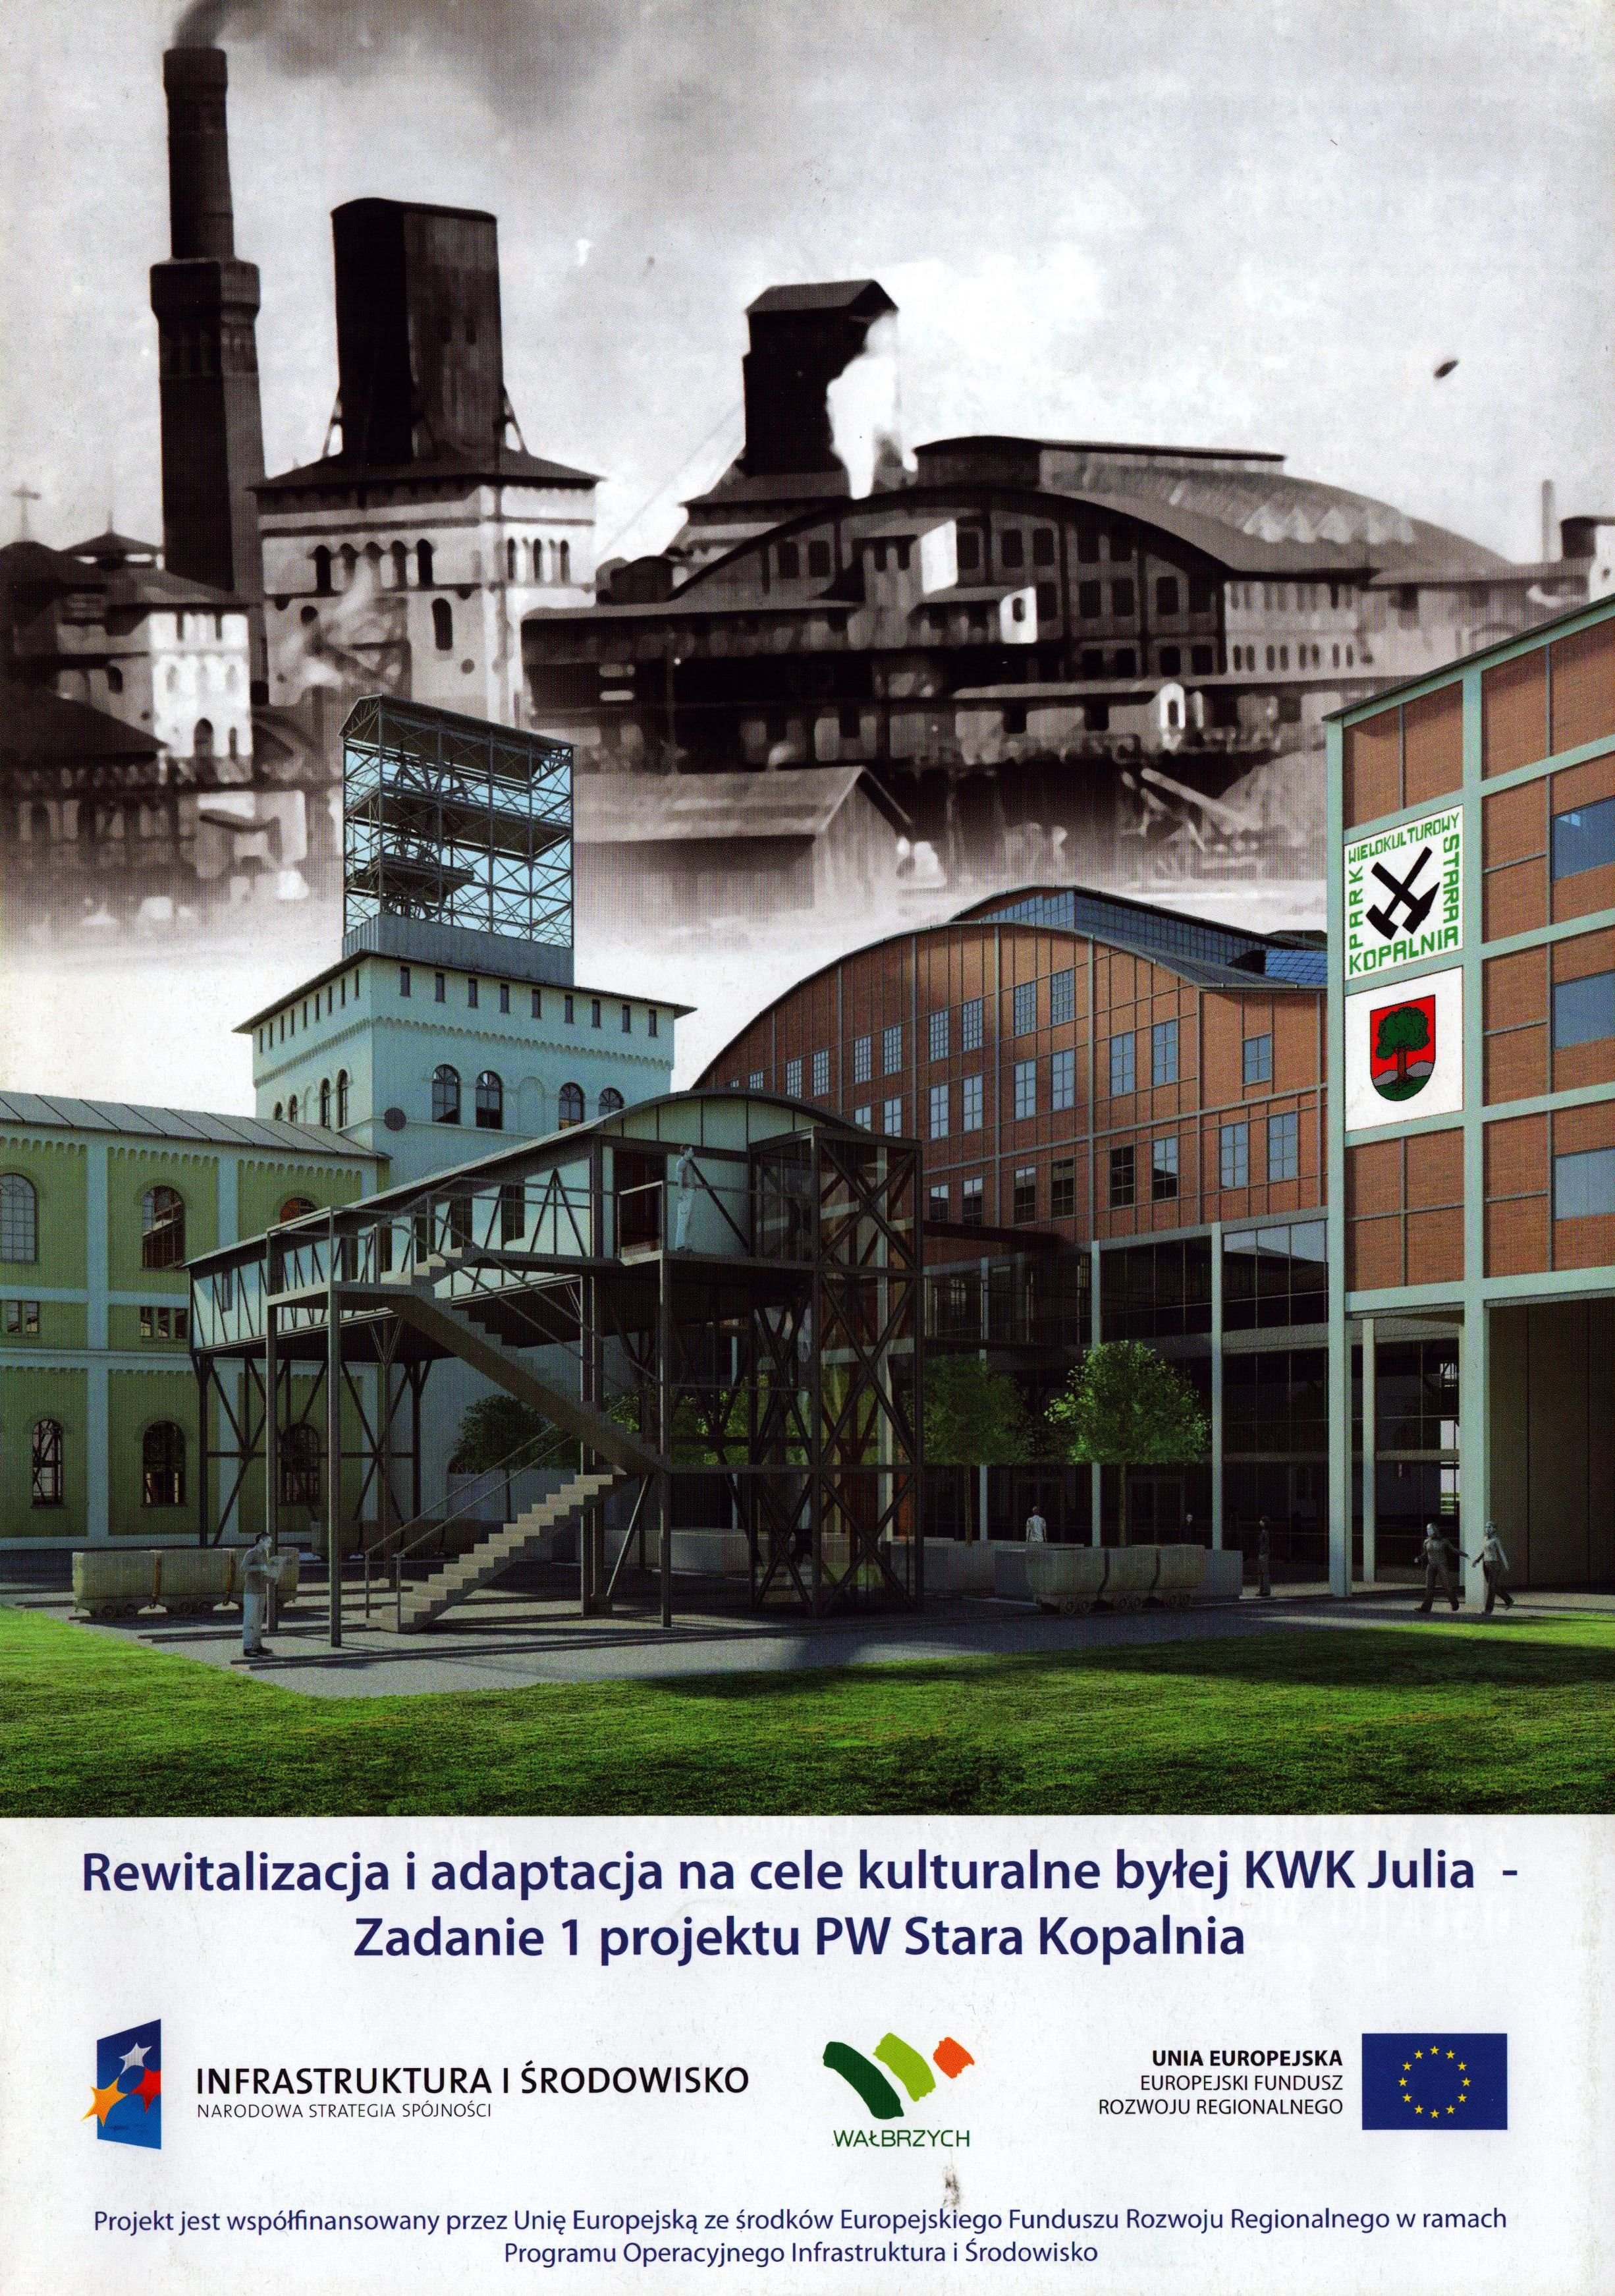 Rewitalizacja i adaptacja na cele kulturalne beylej KWK Julia-Zadanie 1 projektu PW Stara Kopalnia (Archiv SAXONIA-FREIBERG-STIFTUNG CC BY-NC-SA)